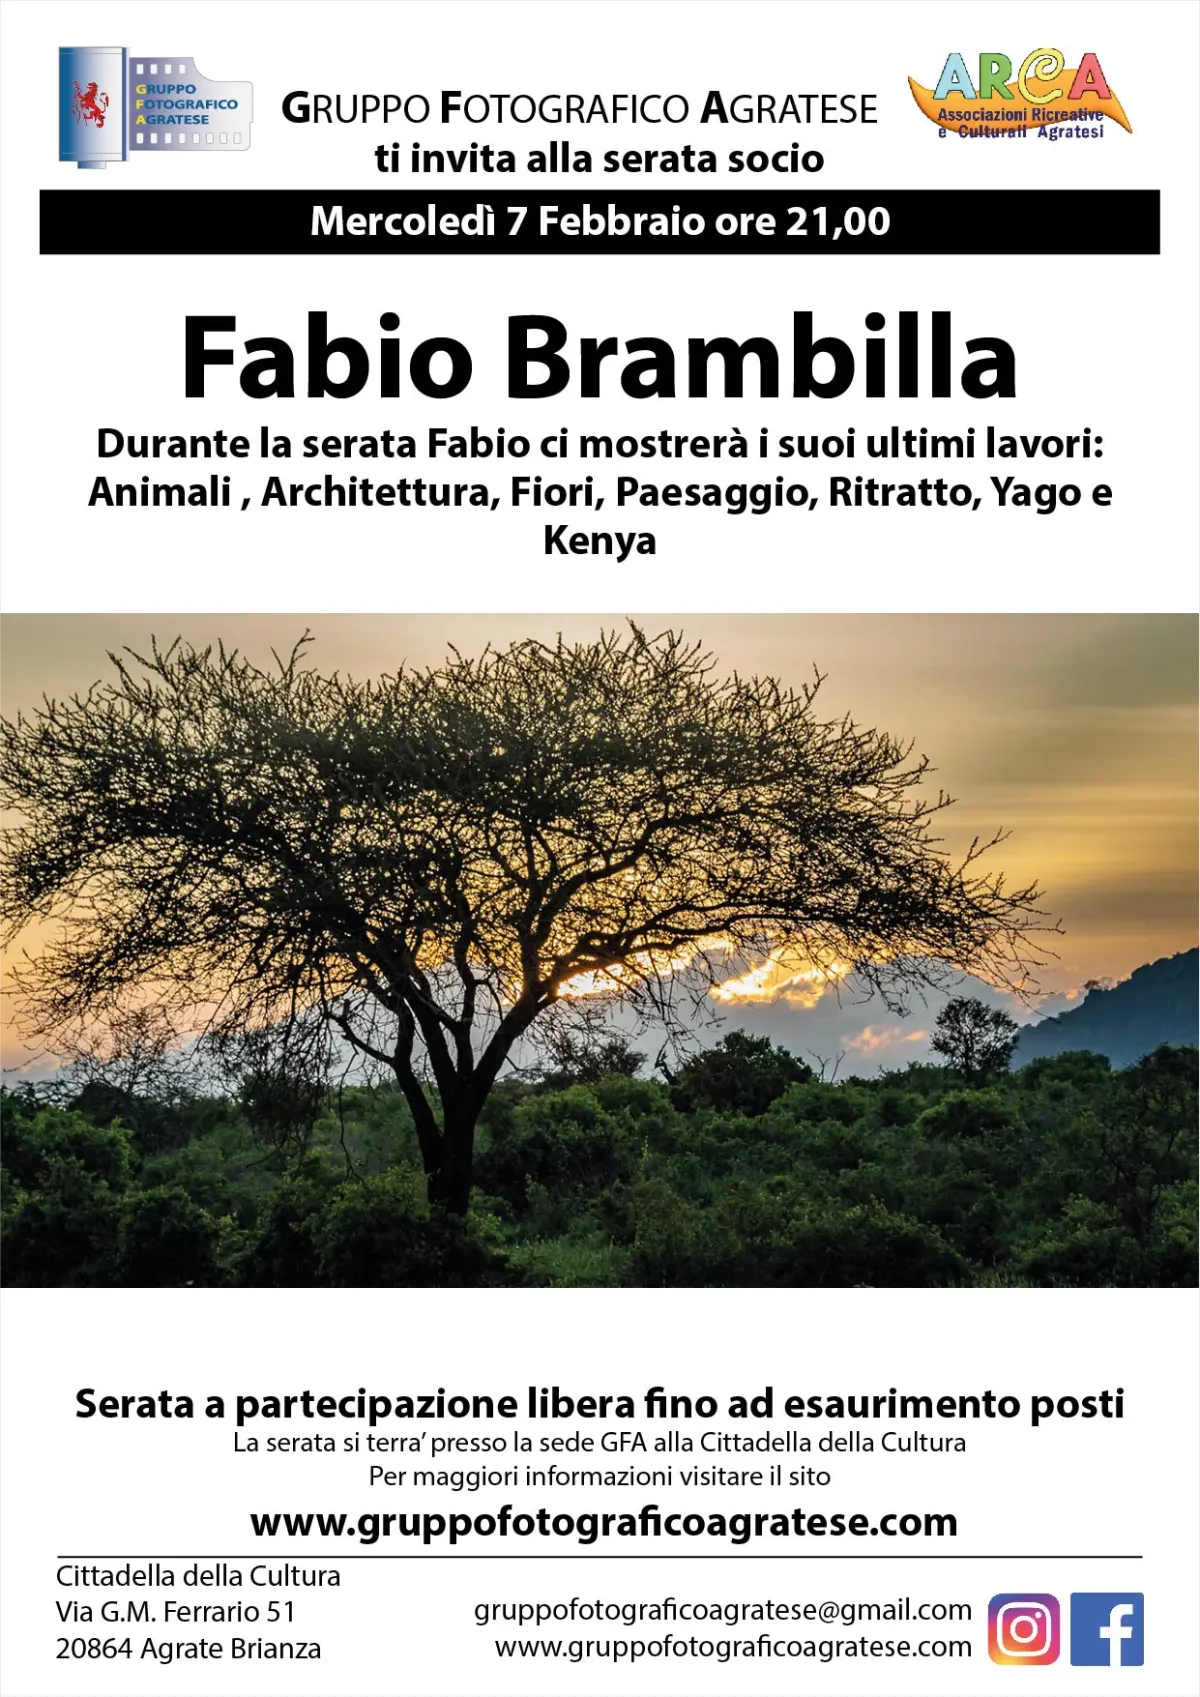 Mercoledì 7 Febbraio Fabio Brambilla ci mostrera’ i suoi lavori